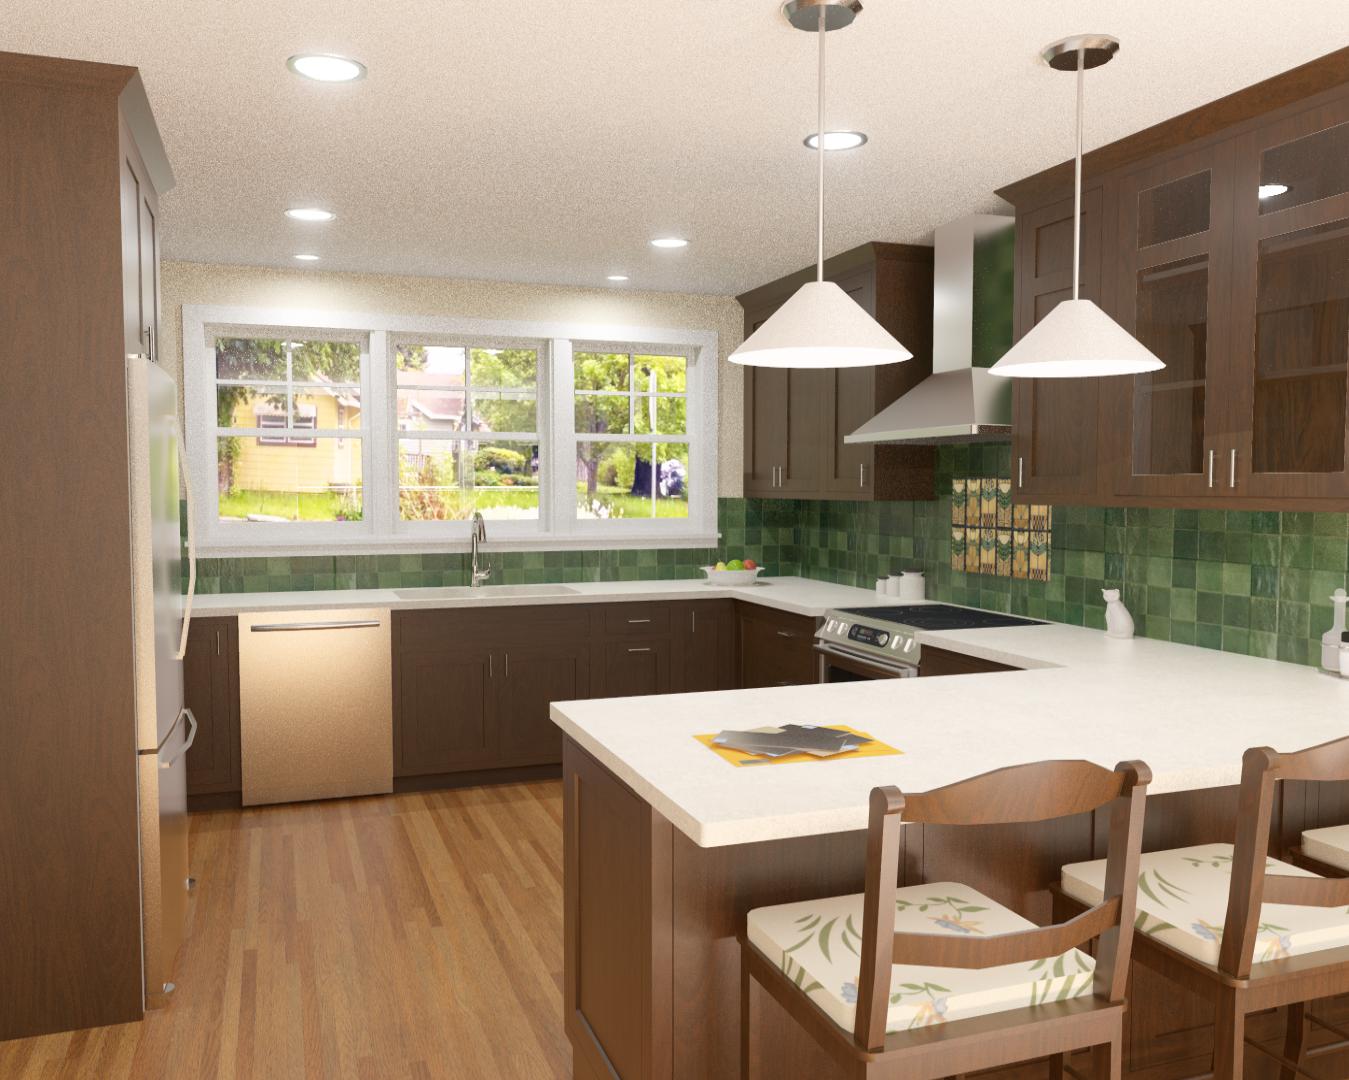 Kitchen rendering